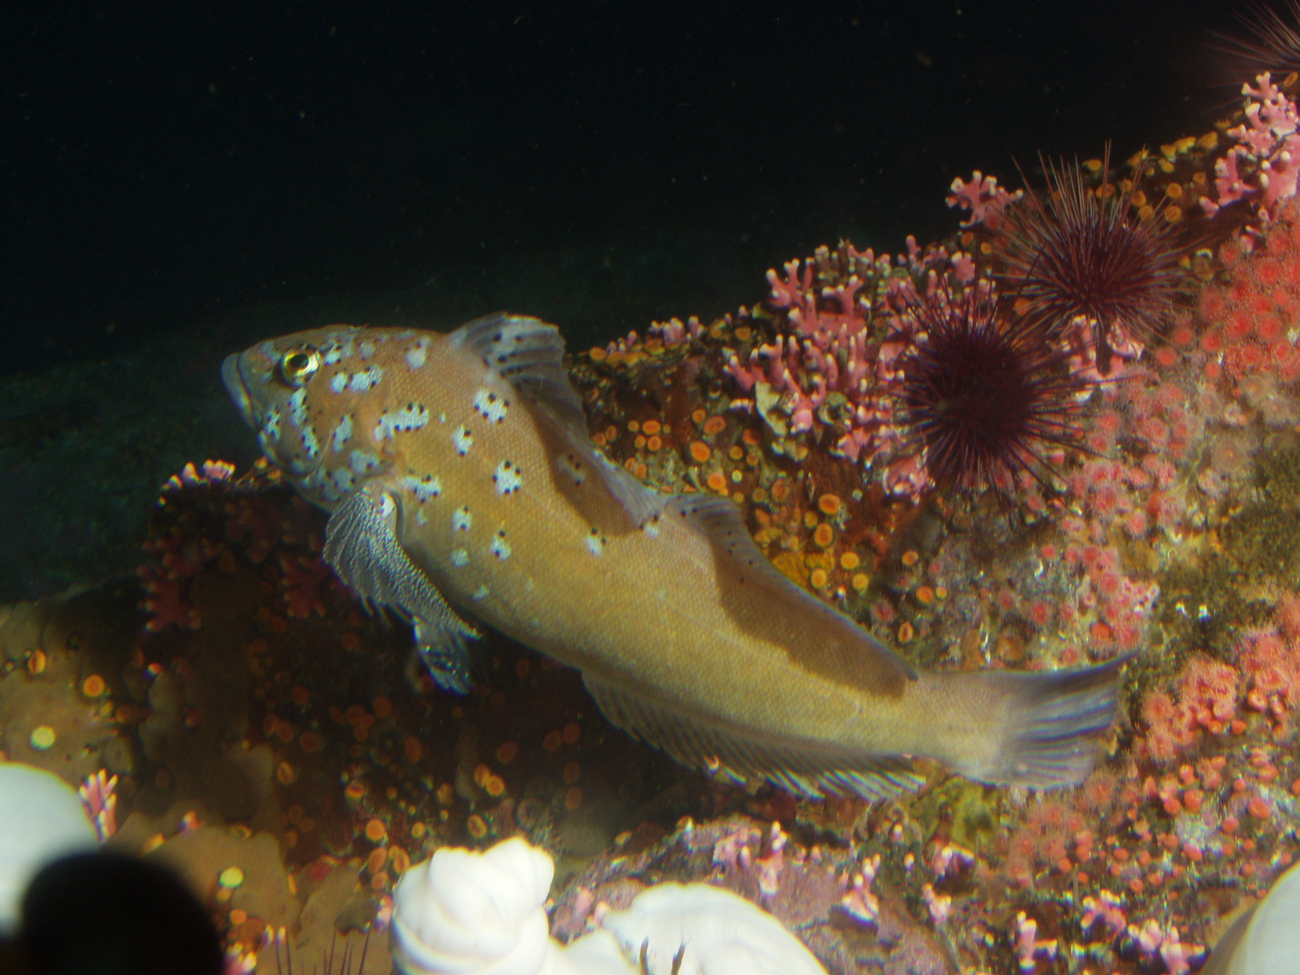 Male Kelp greenling (Hexagrammos decagrammus) in rock reef habitat up closeat 25 meters depth